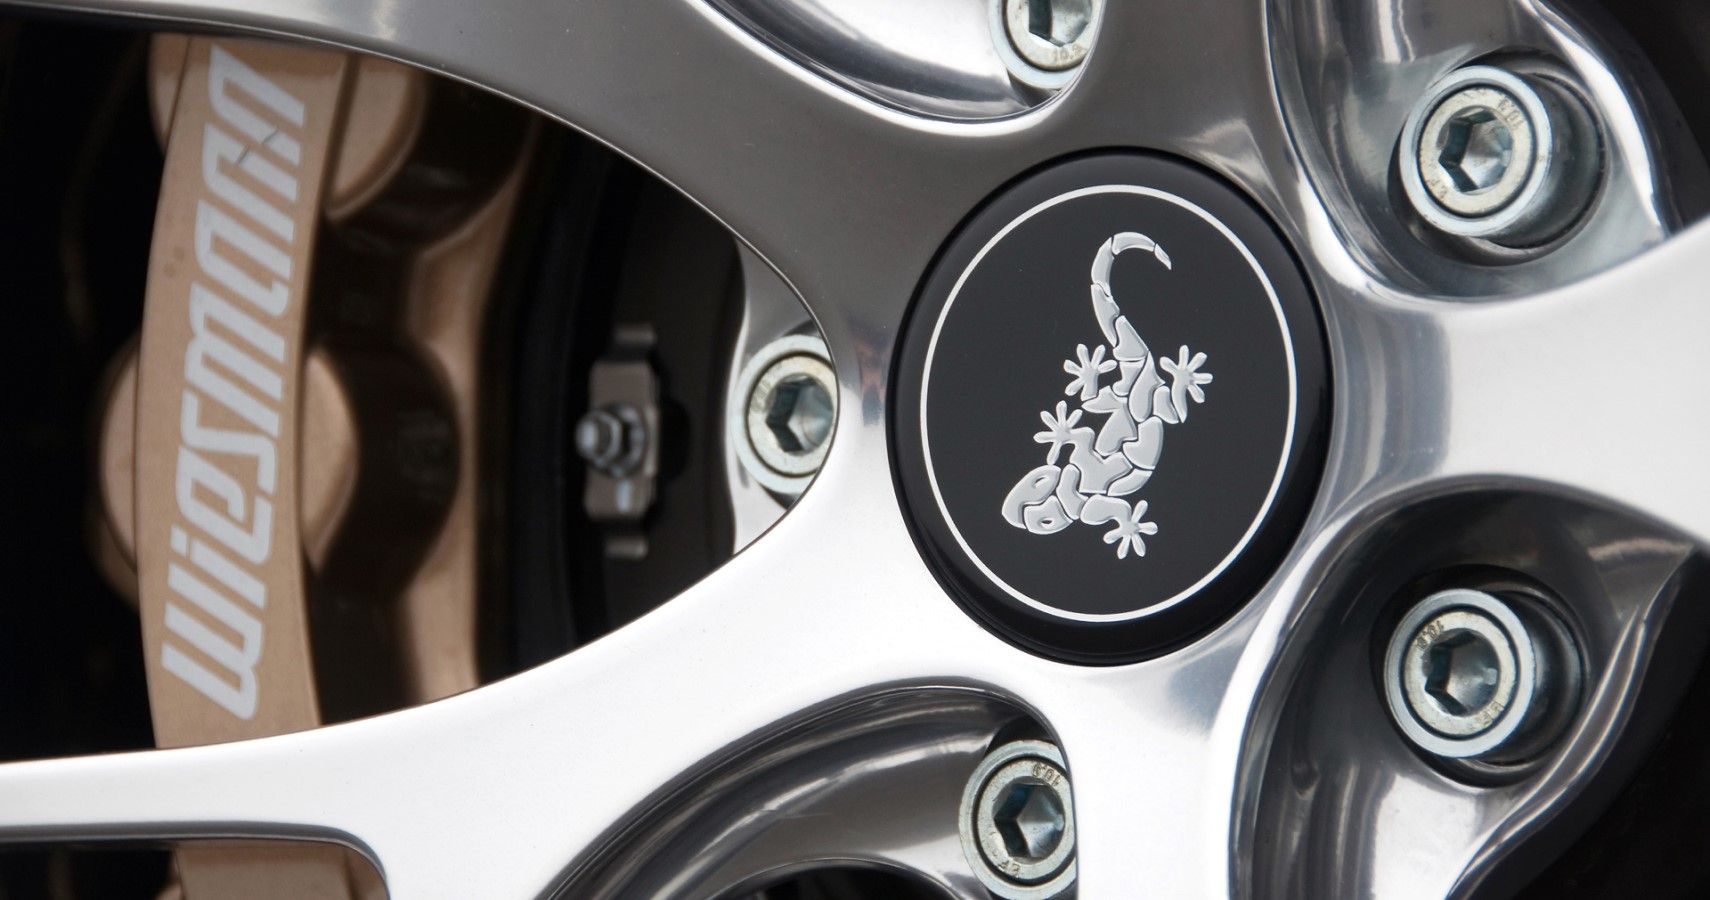 Wiesmann gecko logo on the wheel